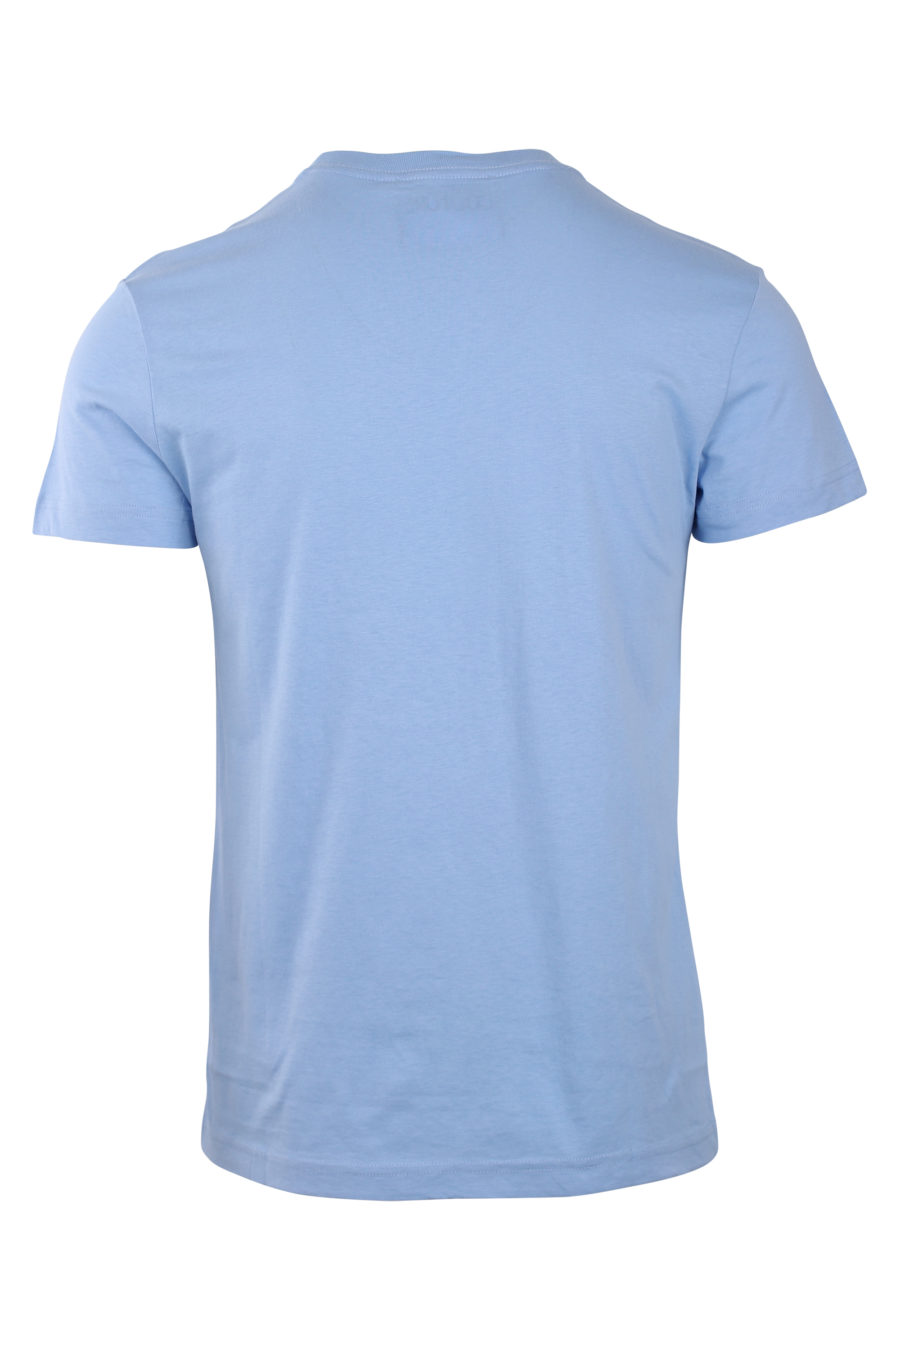 Himmelblaues T-Shirt mit rundem, schillerndem Logo - IMG 0764